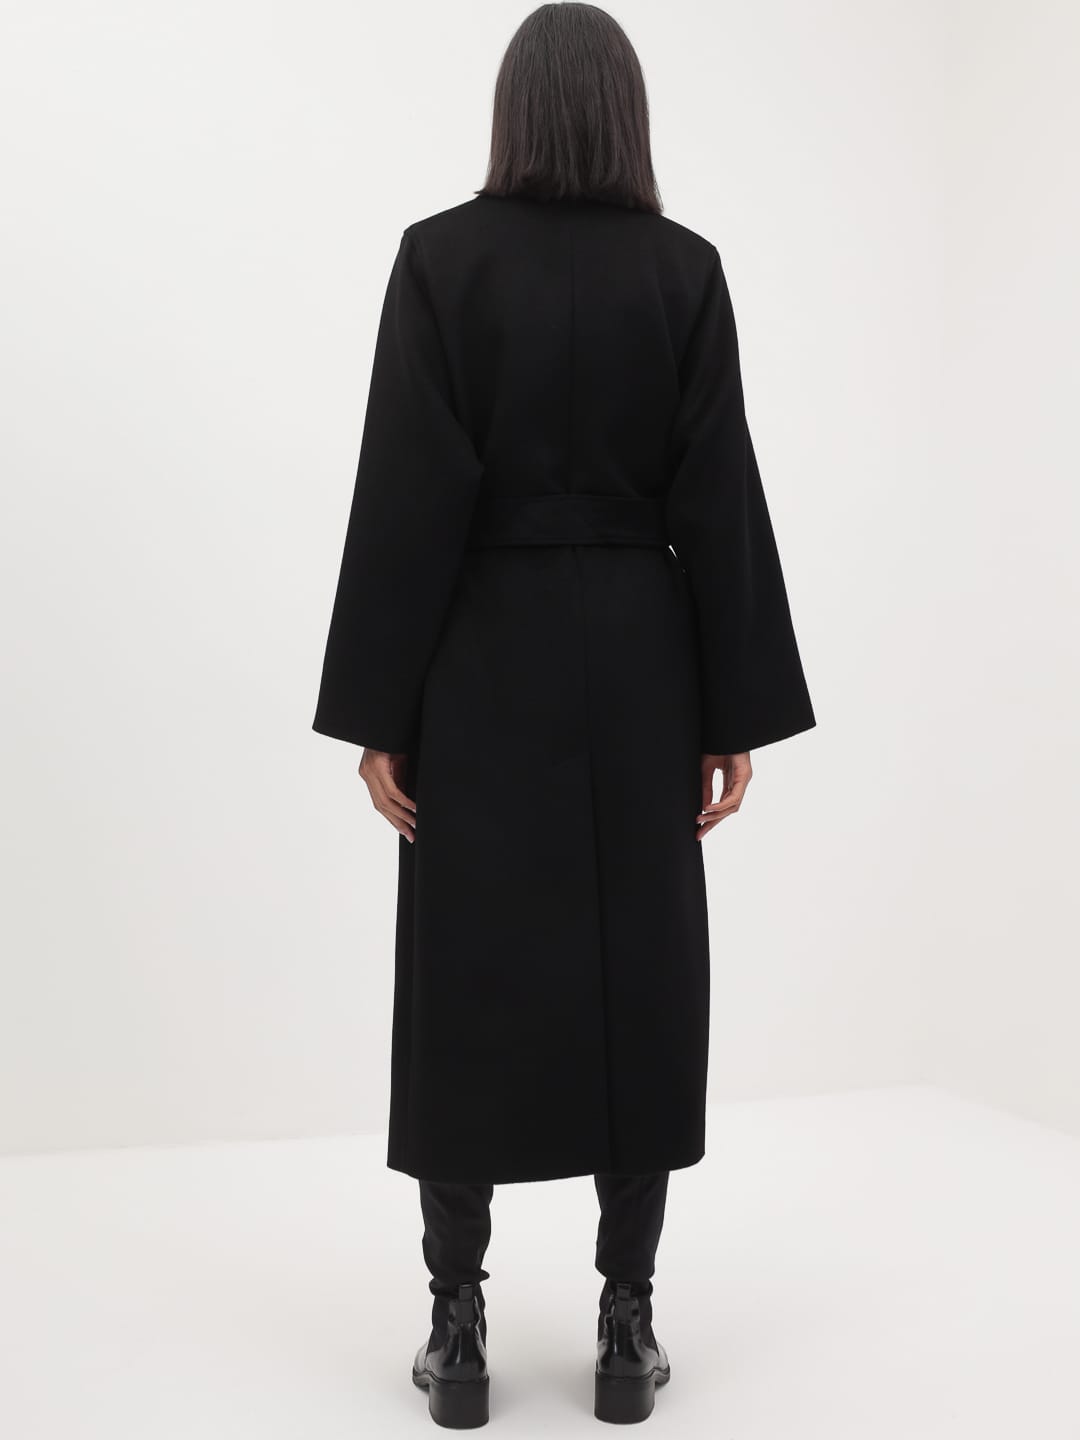 Утеплённое пальто с широкими рукавами в чёрном цвете_5